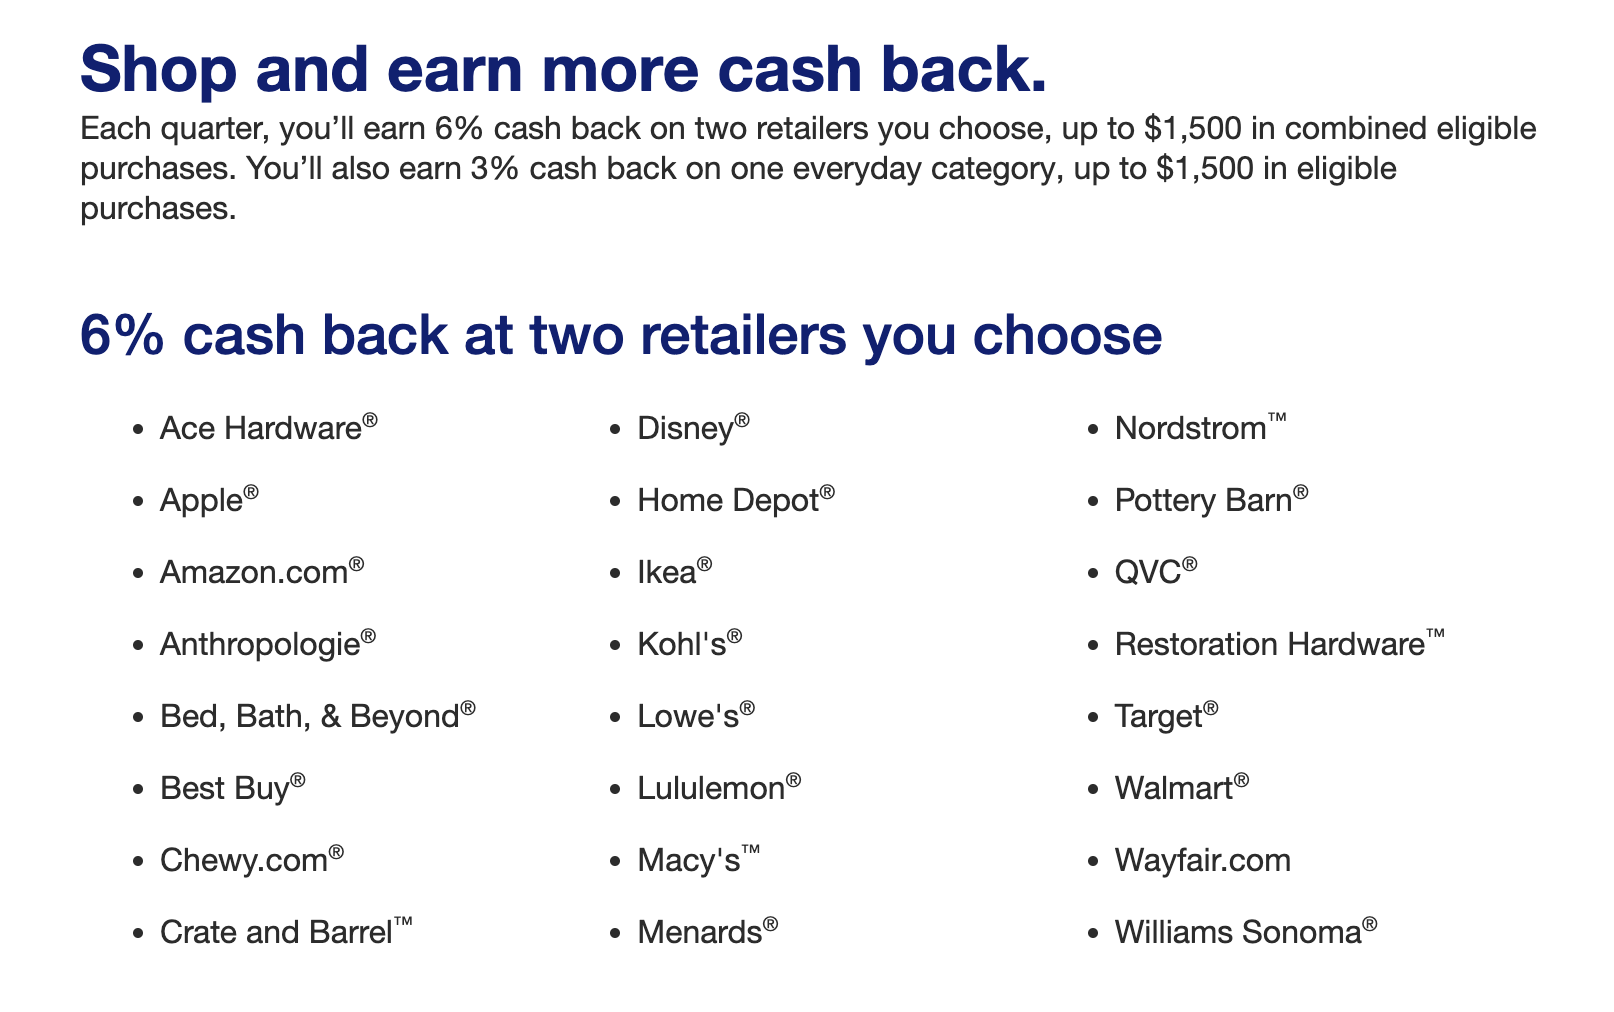 U.S. Bank Shopper Cash Rewards™ Visa Signature® Card